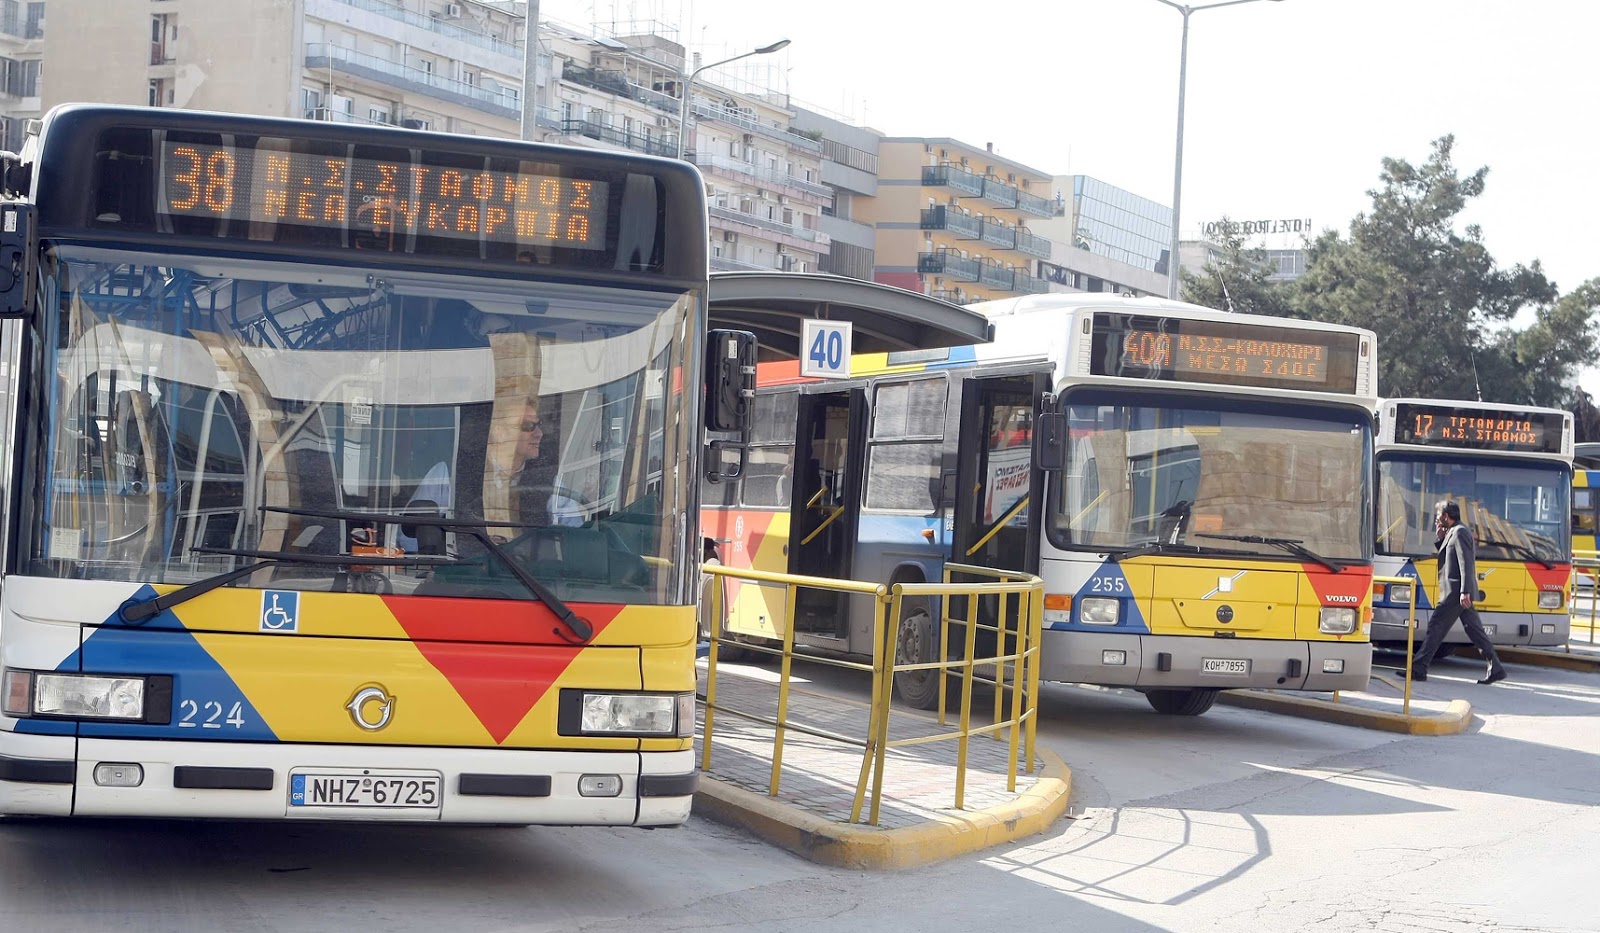 Νόμιμη η επίσχεση των εργαζομένων στα λεωφορεία της Θεσσαλονίκης! Πέμπτη μέρα ταλαιπωρίας - Βρείτε λύση λέει ο Μπουτάρης - Φωτογραφία 1